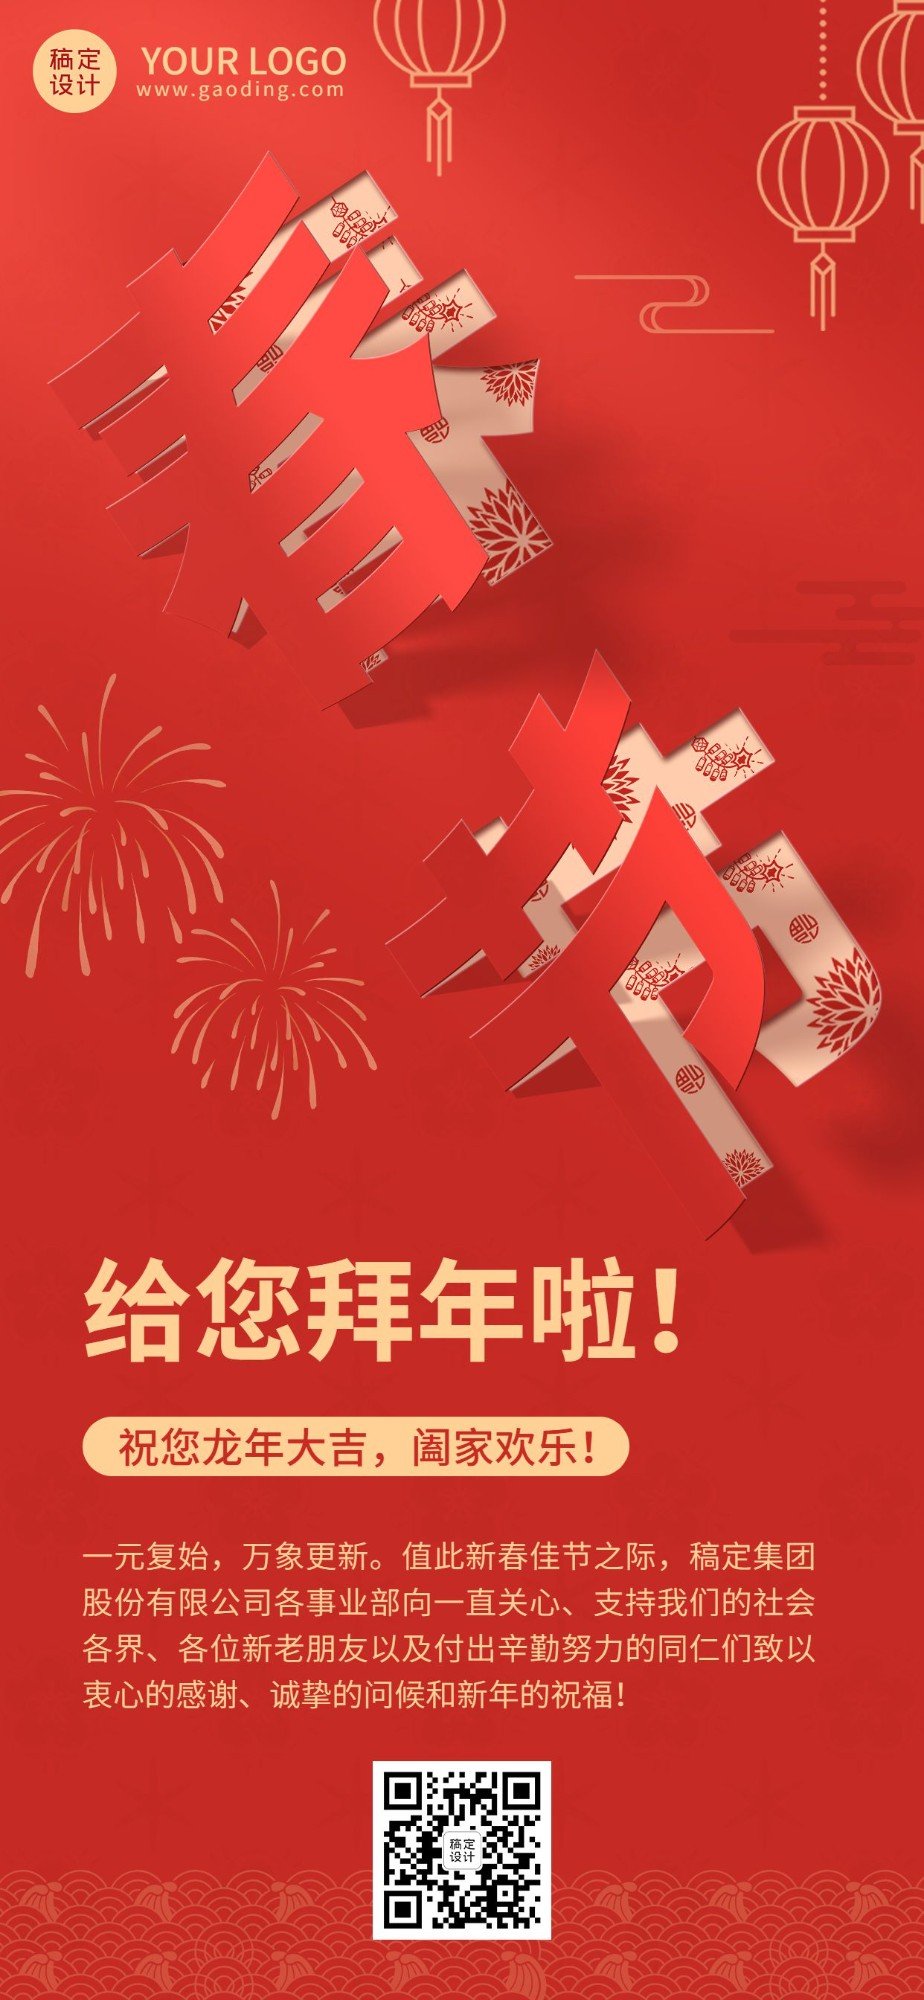 春节祝福企业新年拜年祝福贺卡全屏竖版海报预览效果